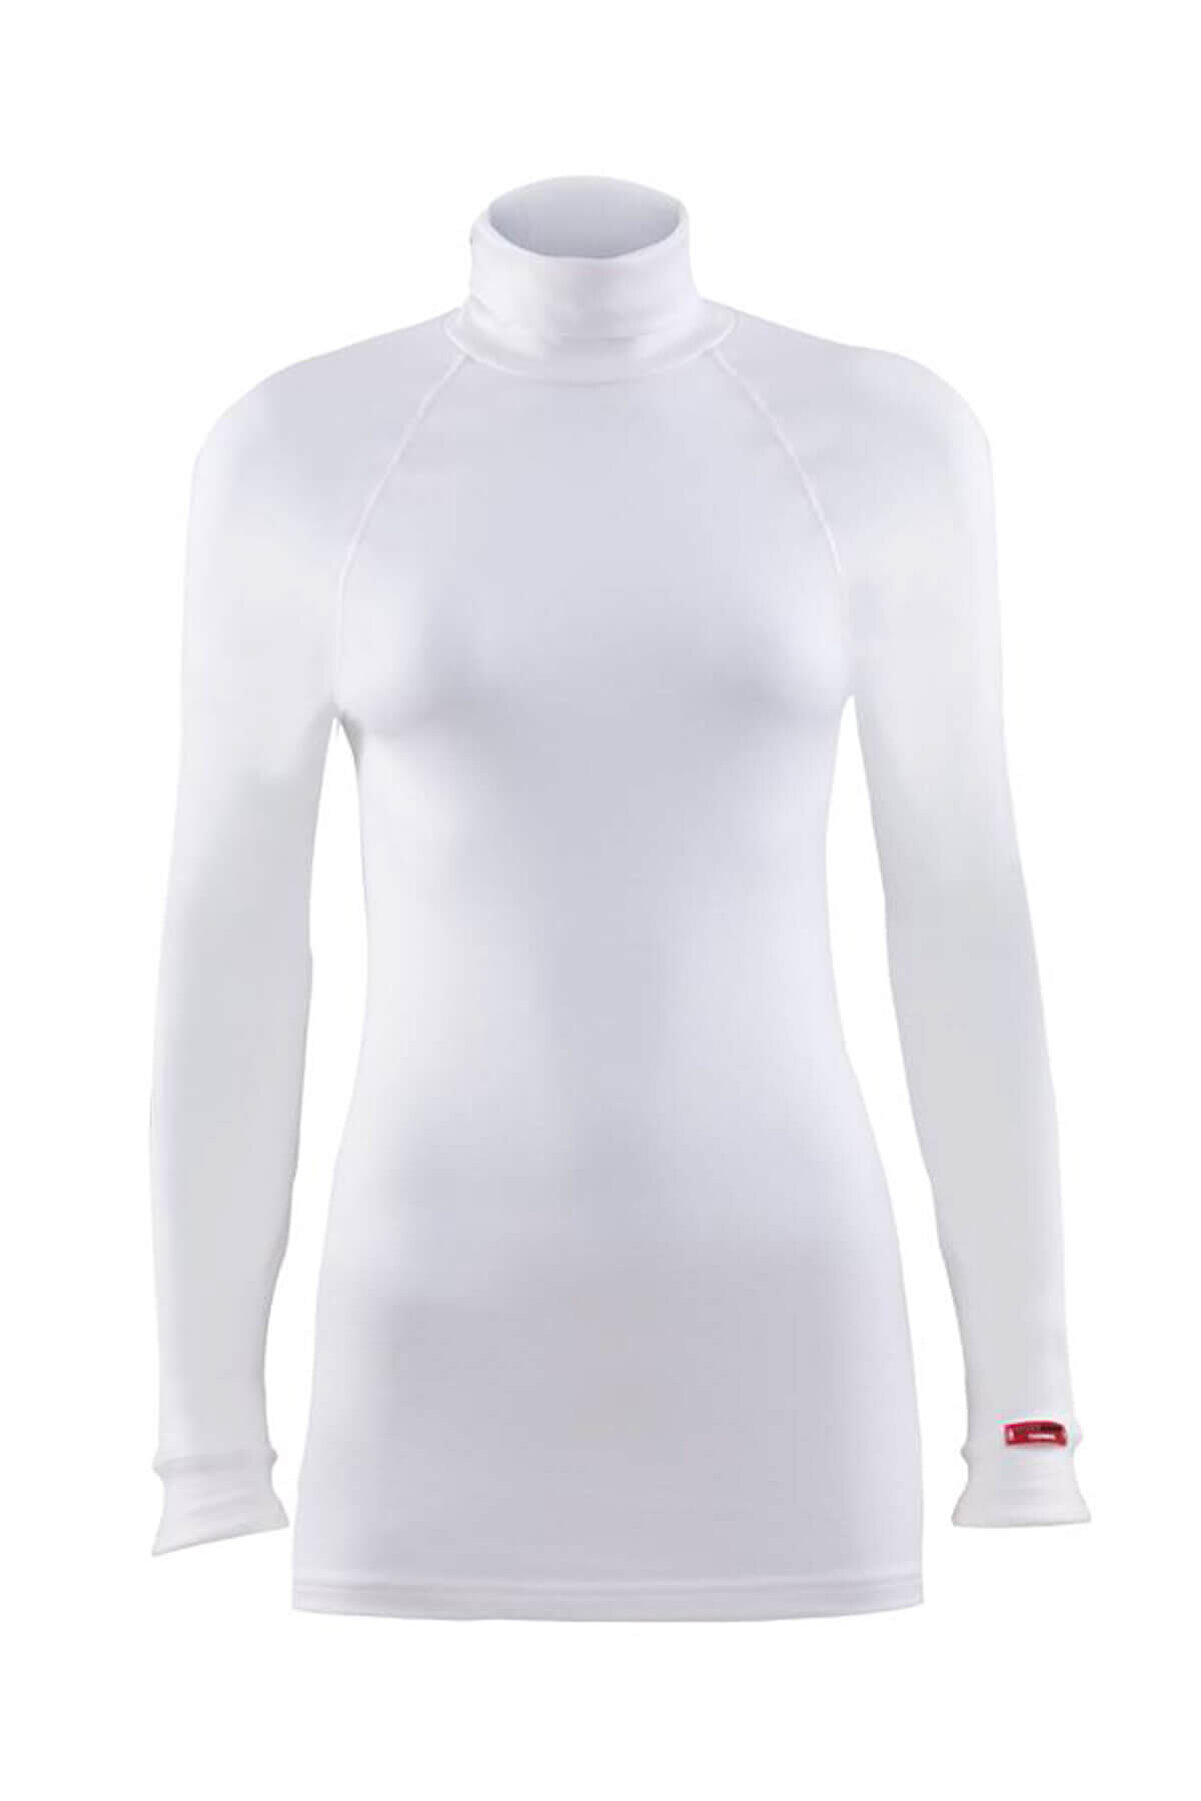 Blackspade Kadın Kar Beyaz 2. Seviye Termal  T-Shirt 9261